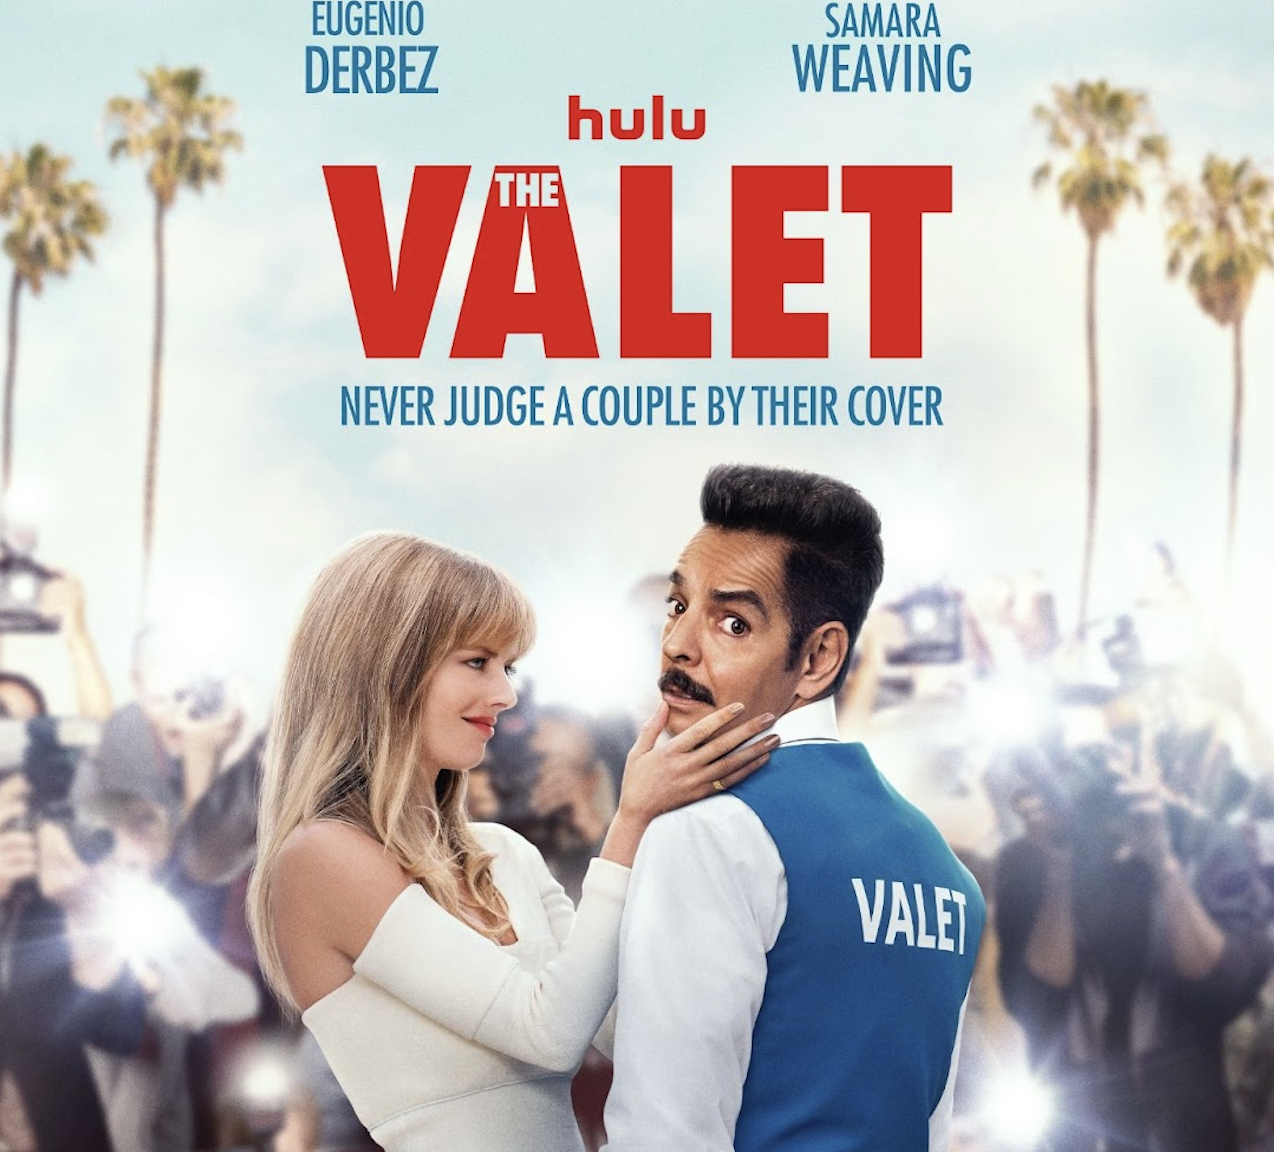 Samara Weaving And Eugenio Derbez Star In The Valet | Trailer